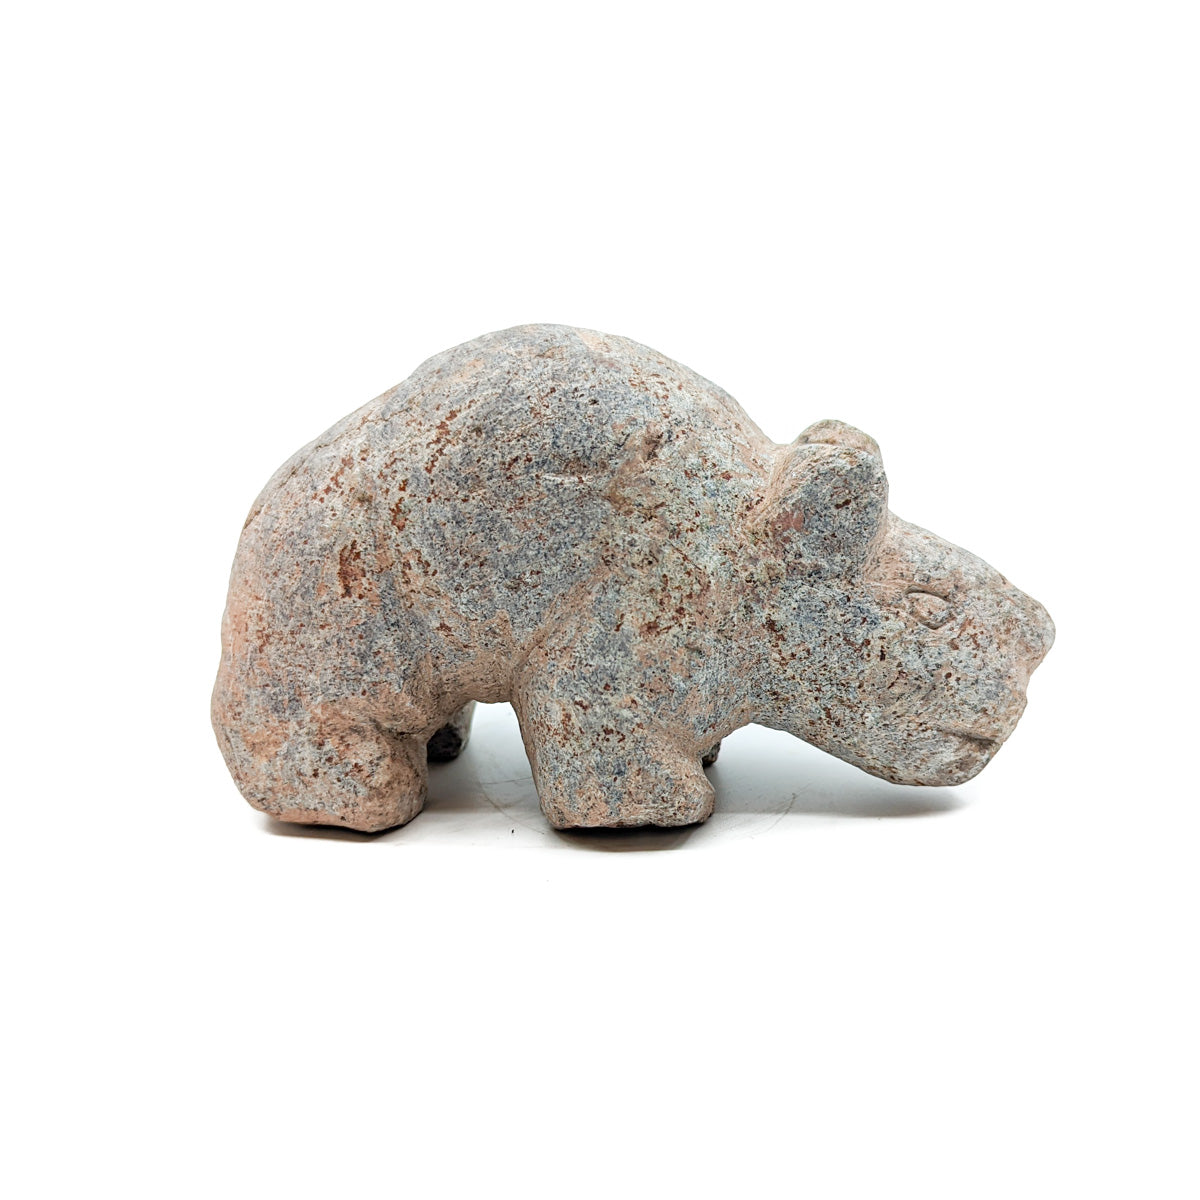 Yoreme (Mayo) Soapstone Bear Carving